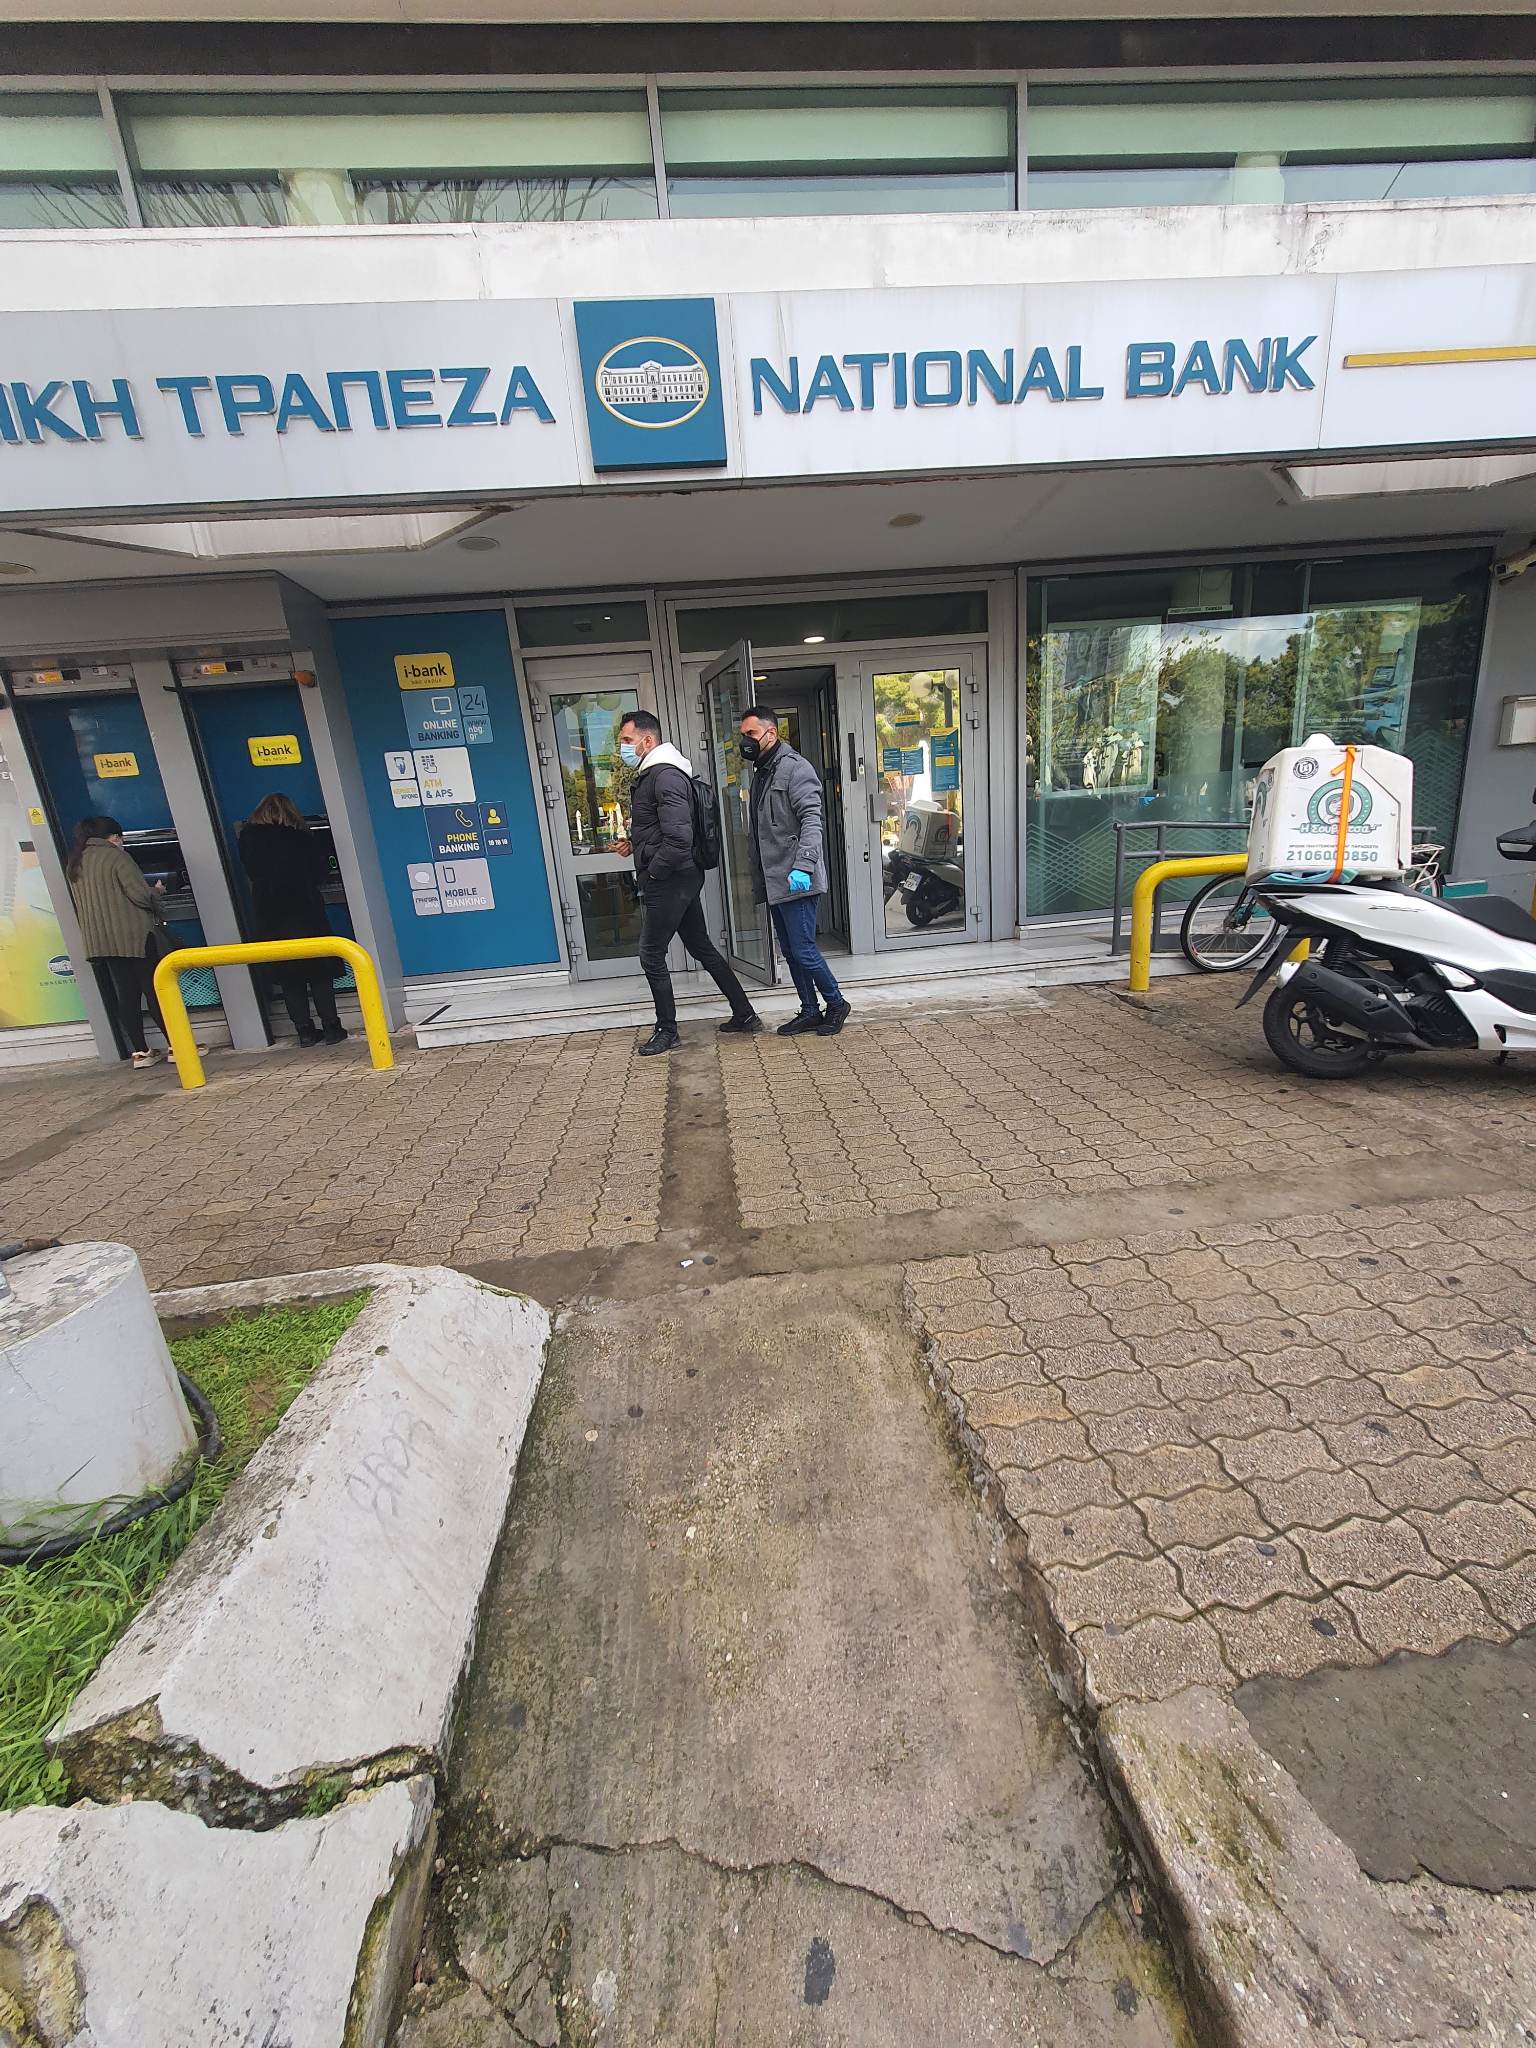 Ληστεία με απειλή εκρηκτικού μηχανισμού στην Εθνική Τράπεζα της Αγίας Παρασκευής